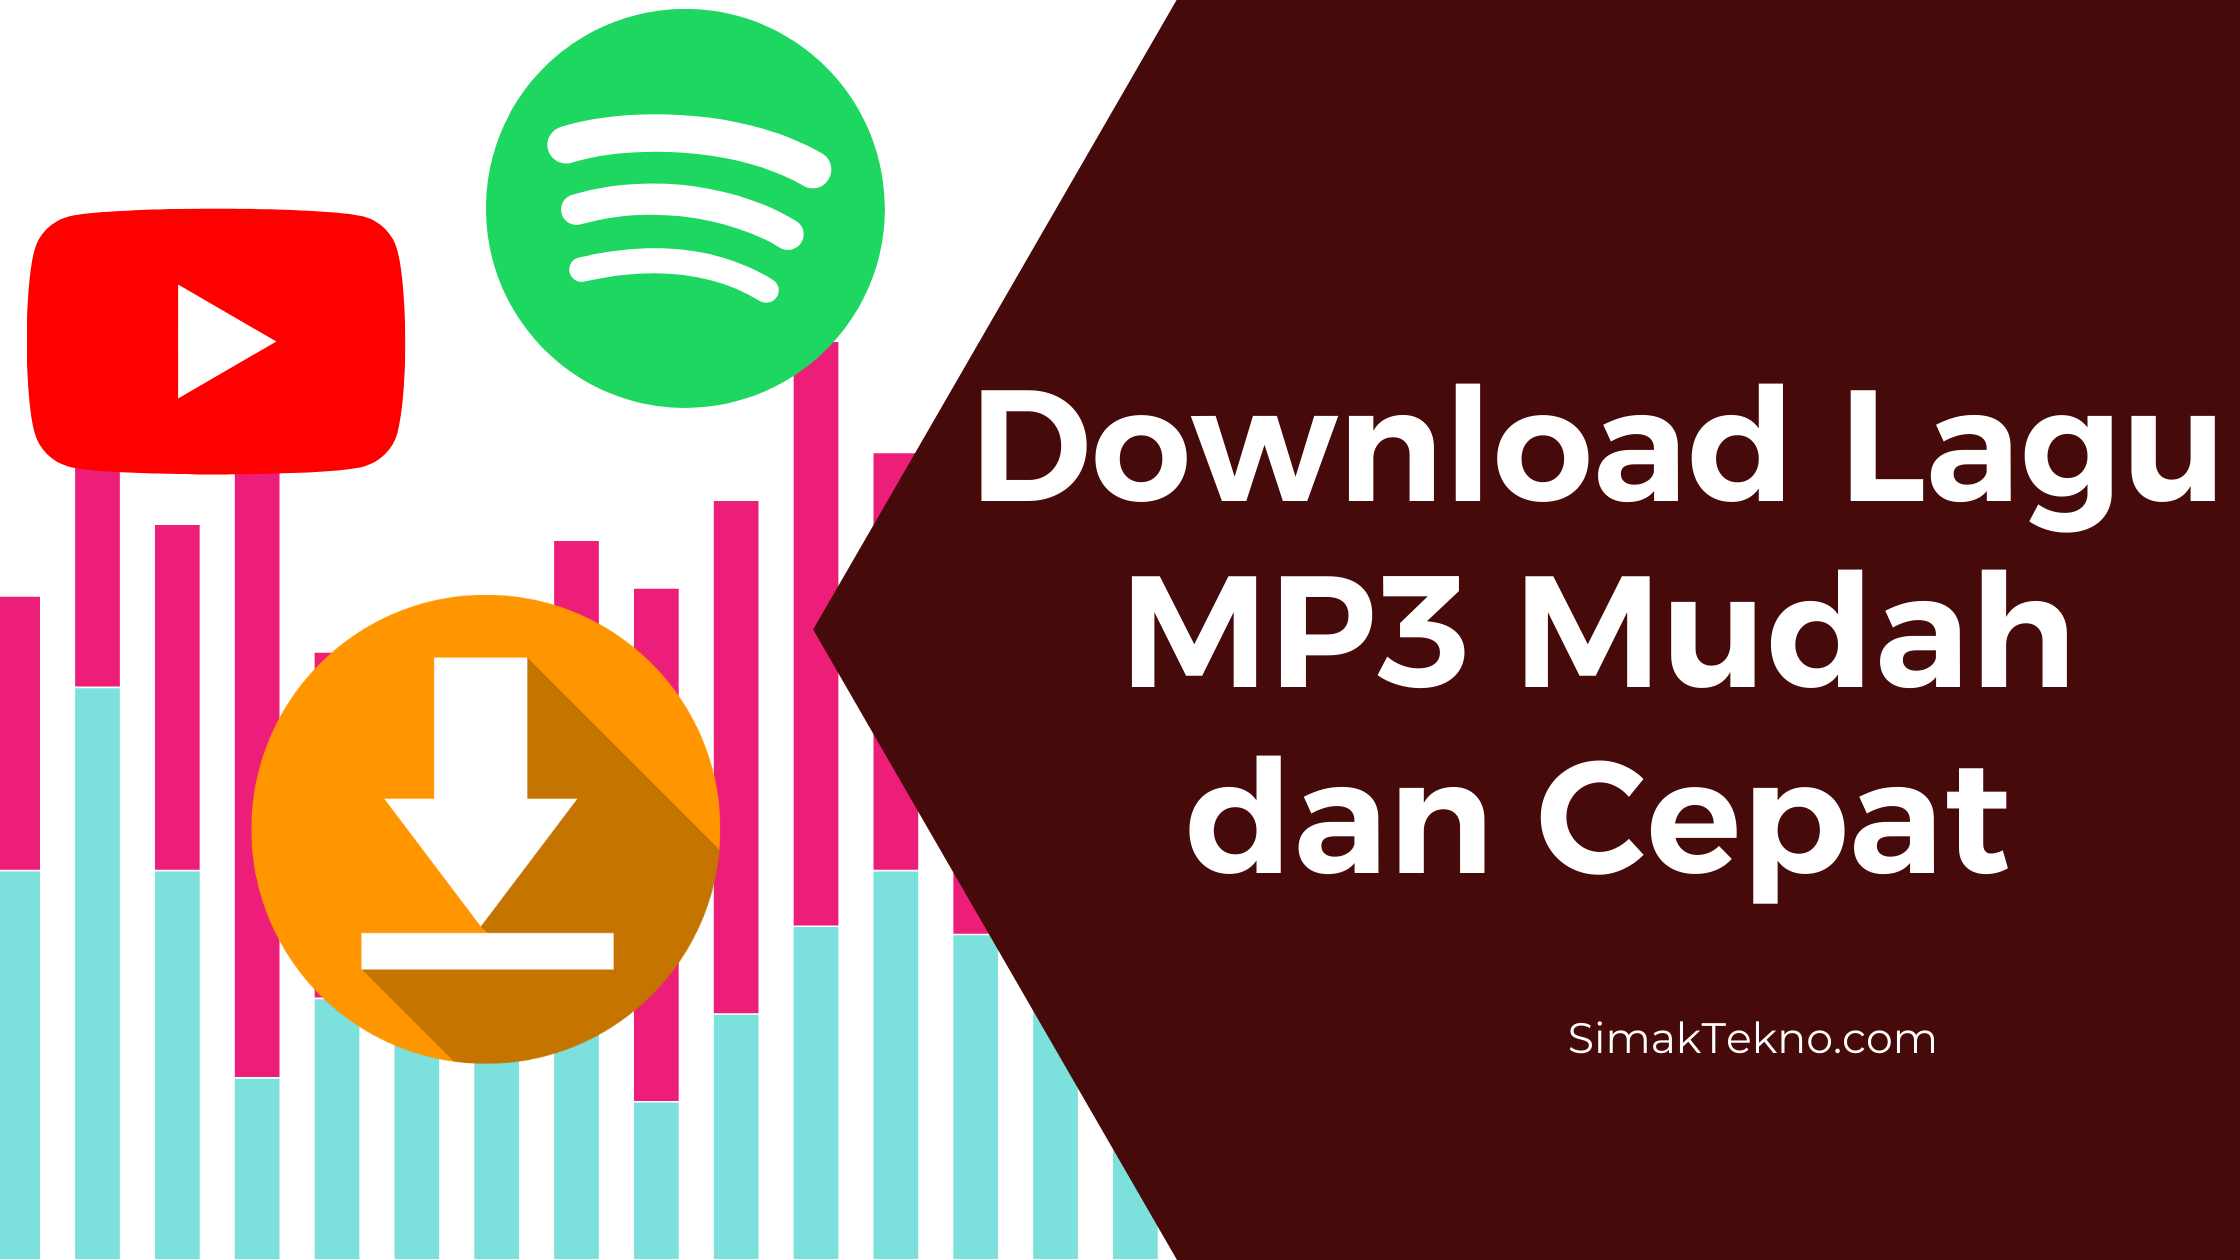 Download lagu mp3 mudah dan cepat